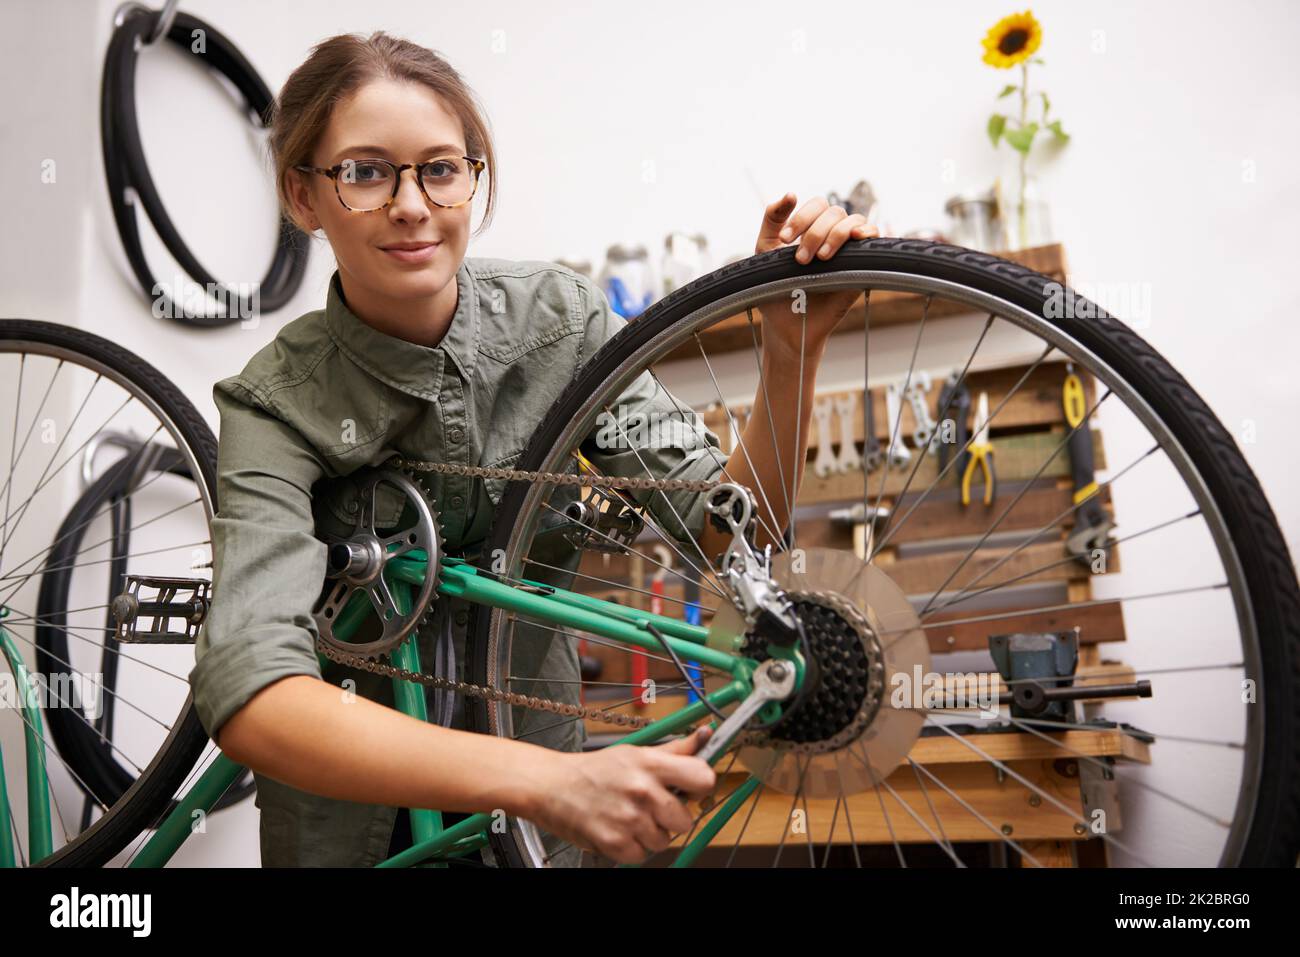 Le ragazze possono riparare le cose anche. Scatto di una giovane donna che guarda la macchina fotografica mentre fissa una bicicletta. Foto Stock